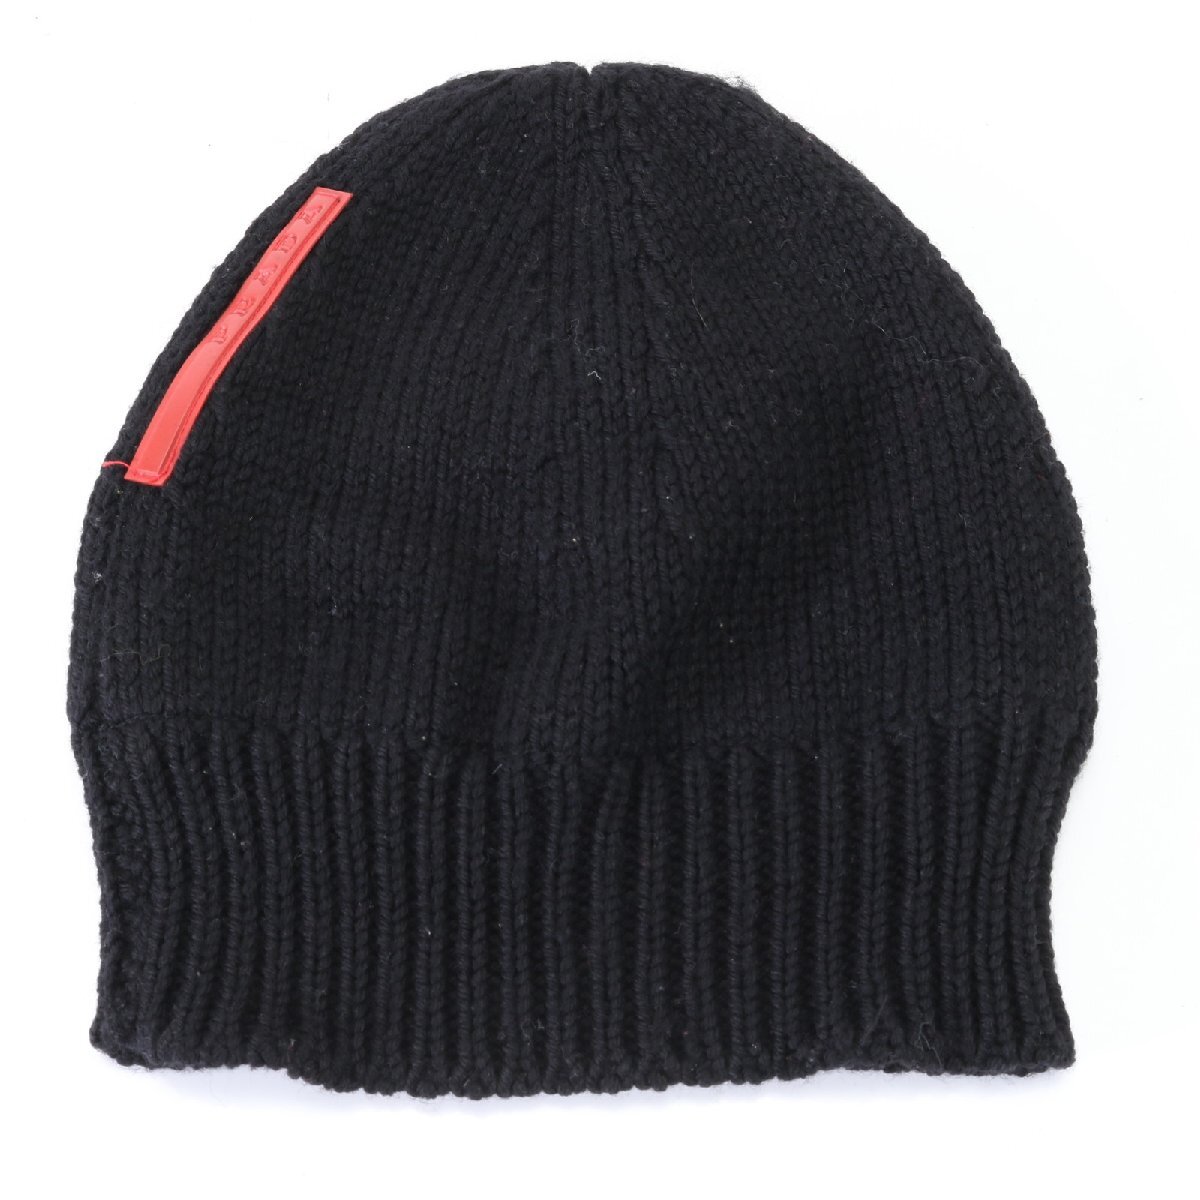 1 иен # прекрасный товар # Prada спорт Beanie вязаная шапка вязаная шапка черный чёрный шляпа одежда мужской женский EEM U17-9